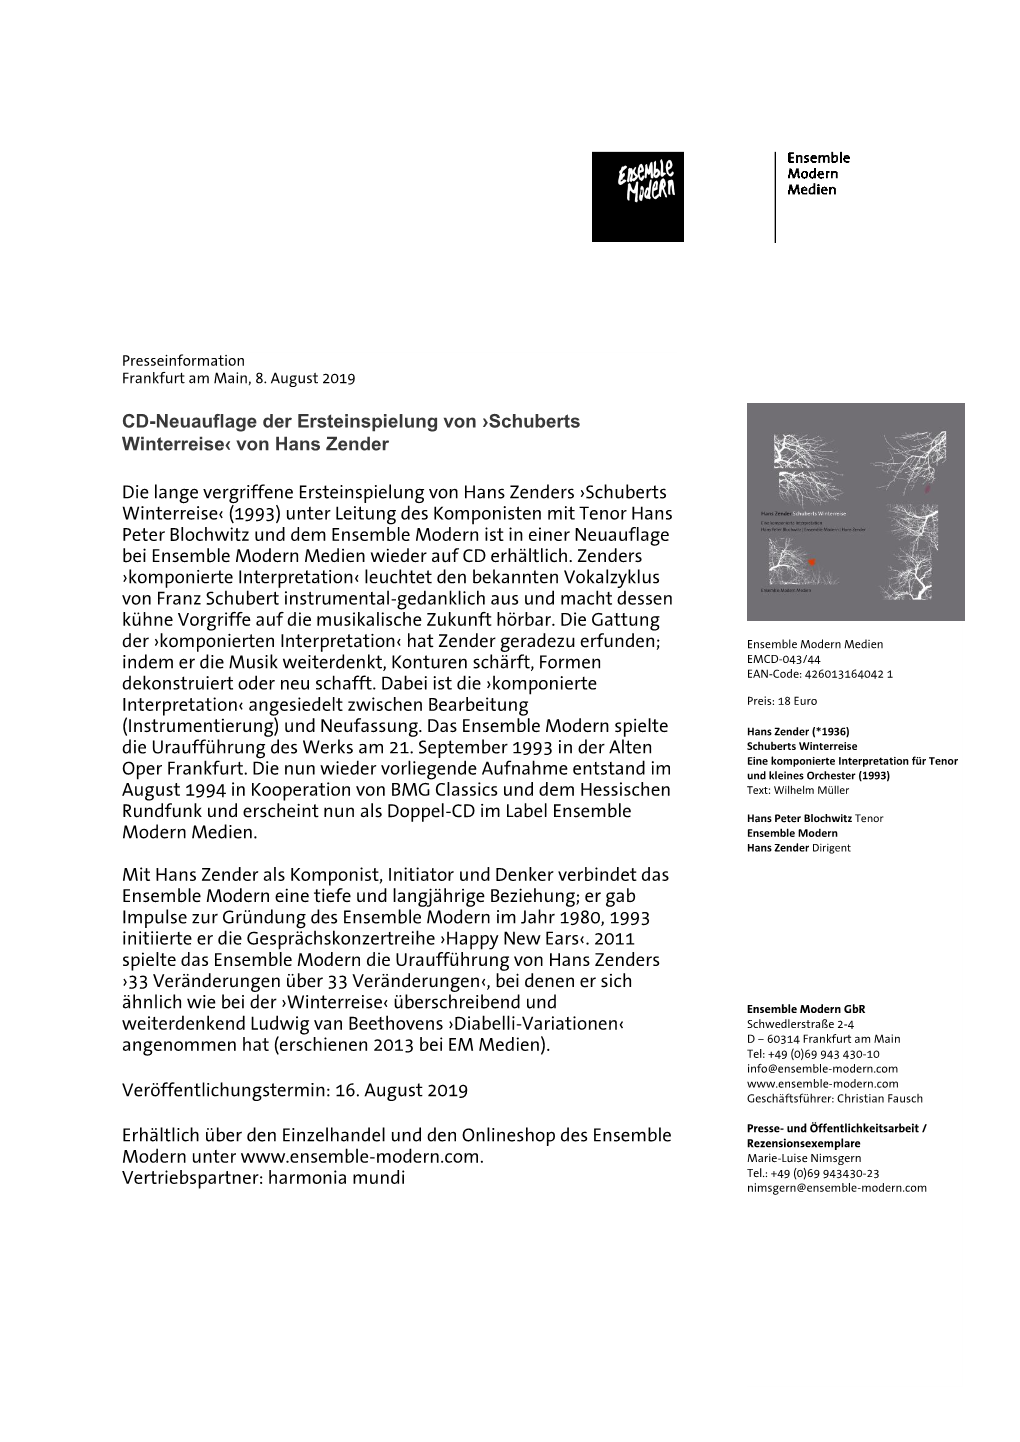 CD-Neuauflage Der Ersteinspielung Von ›Schuberts Winterreise‹ Von Hans Zender